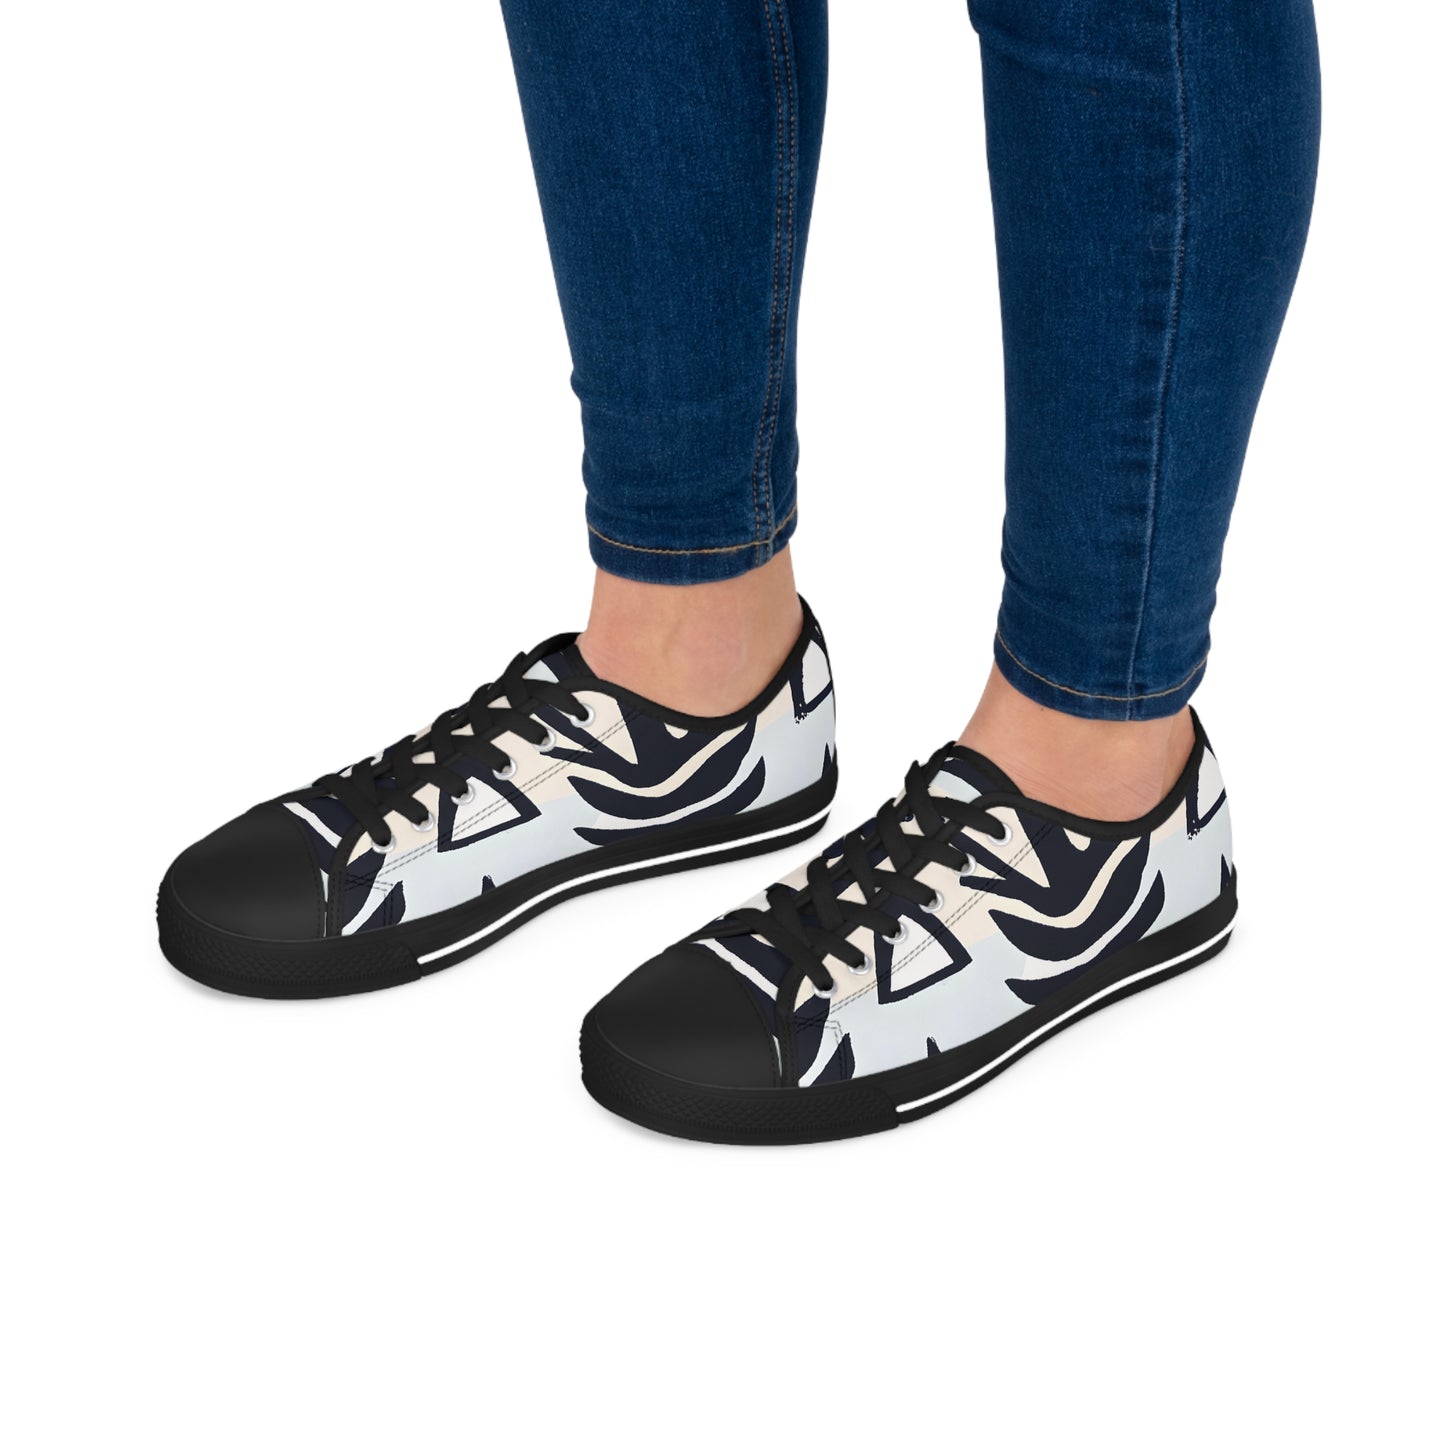 Gestura Millicent - Women's Low-Top Sneakers